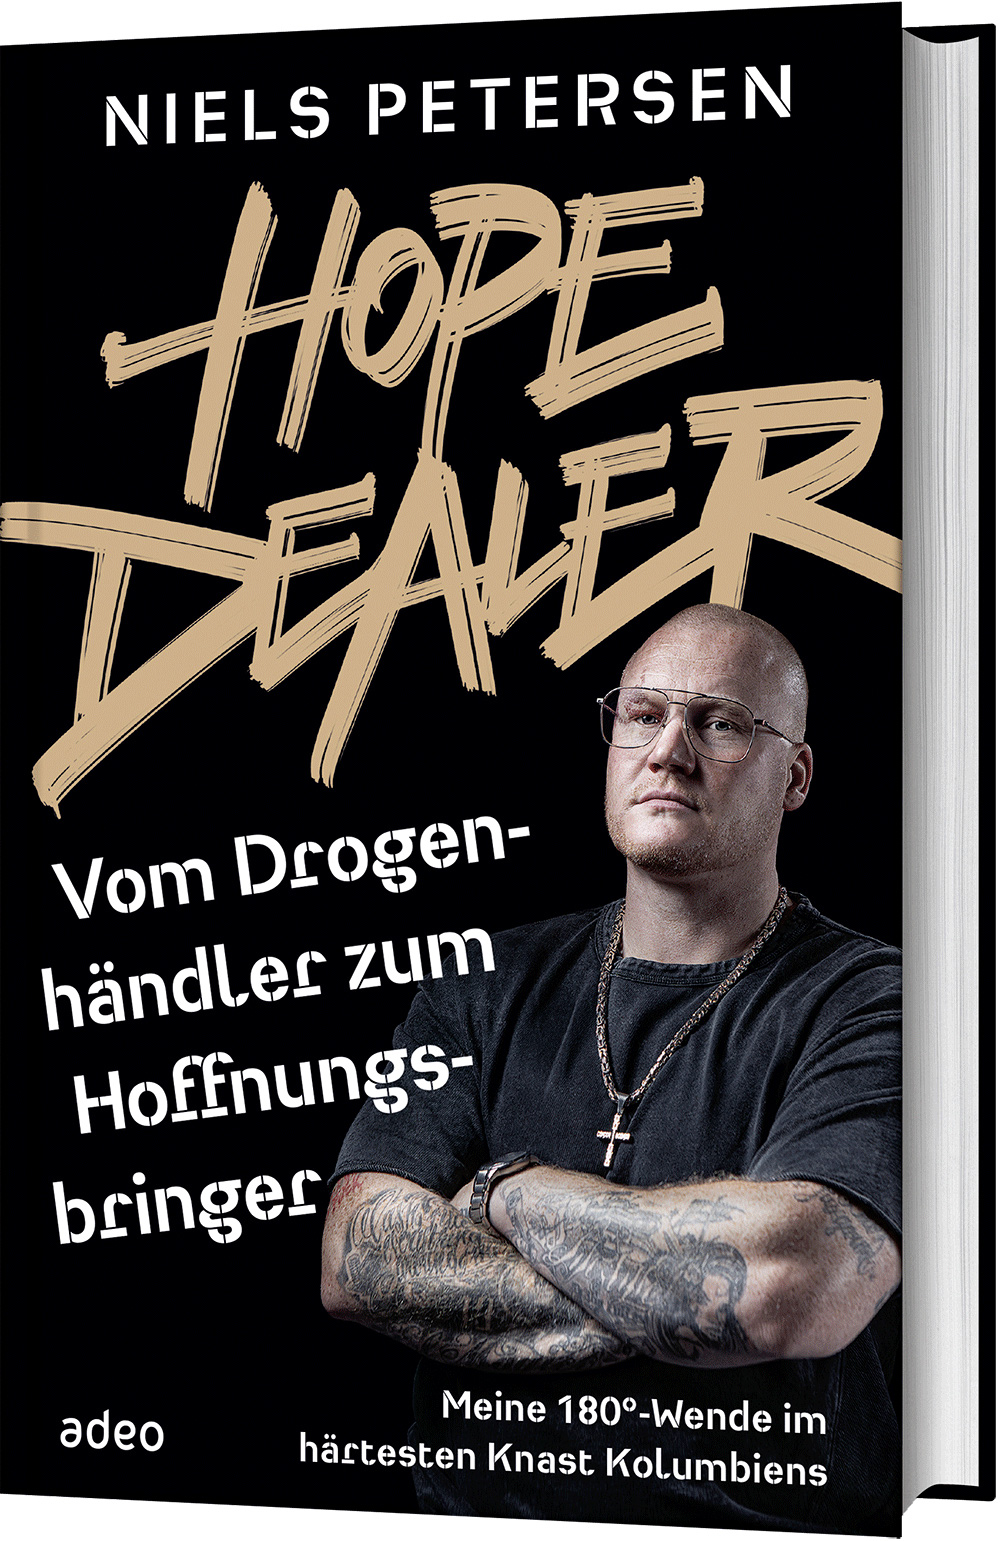 Hope Dealer - Vom Drogenhändler zum Hoffnungsbringer